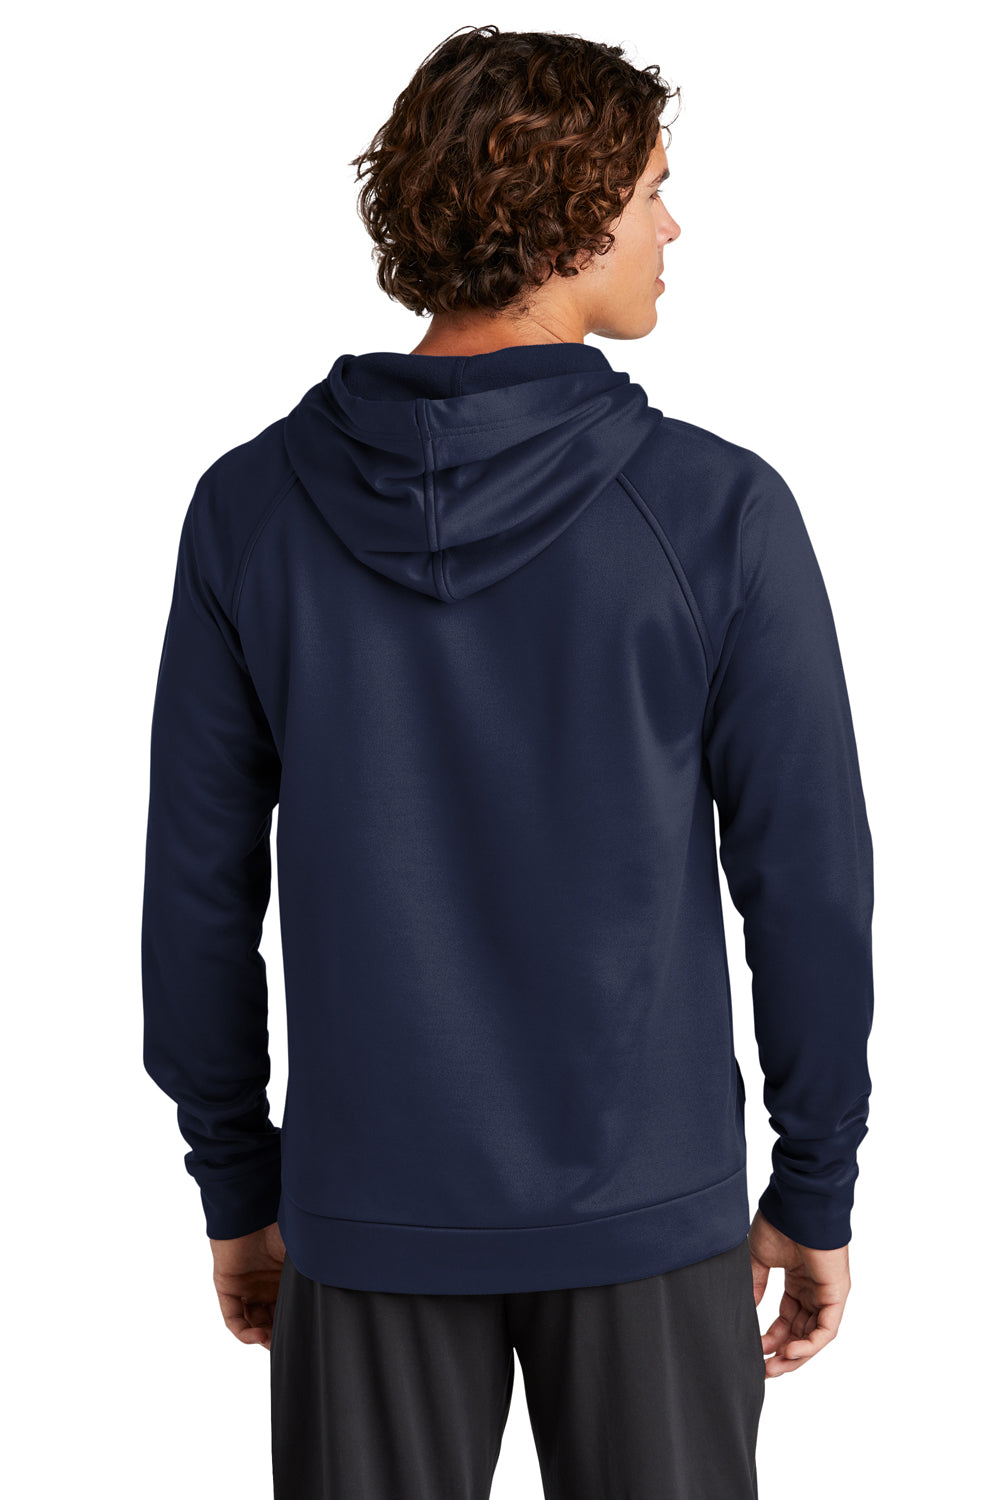 Sport-Tek ST730 Mens Re-Compete Fleece Hooded Sweatshirt Hoodie True Navy Blue Back